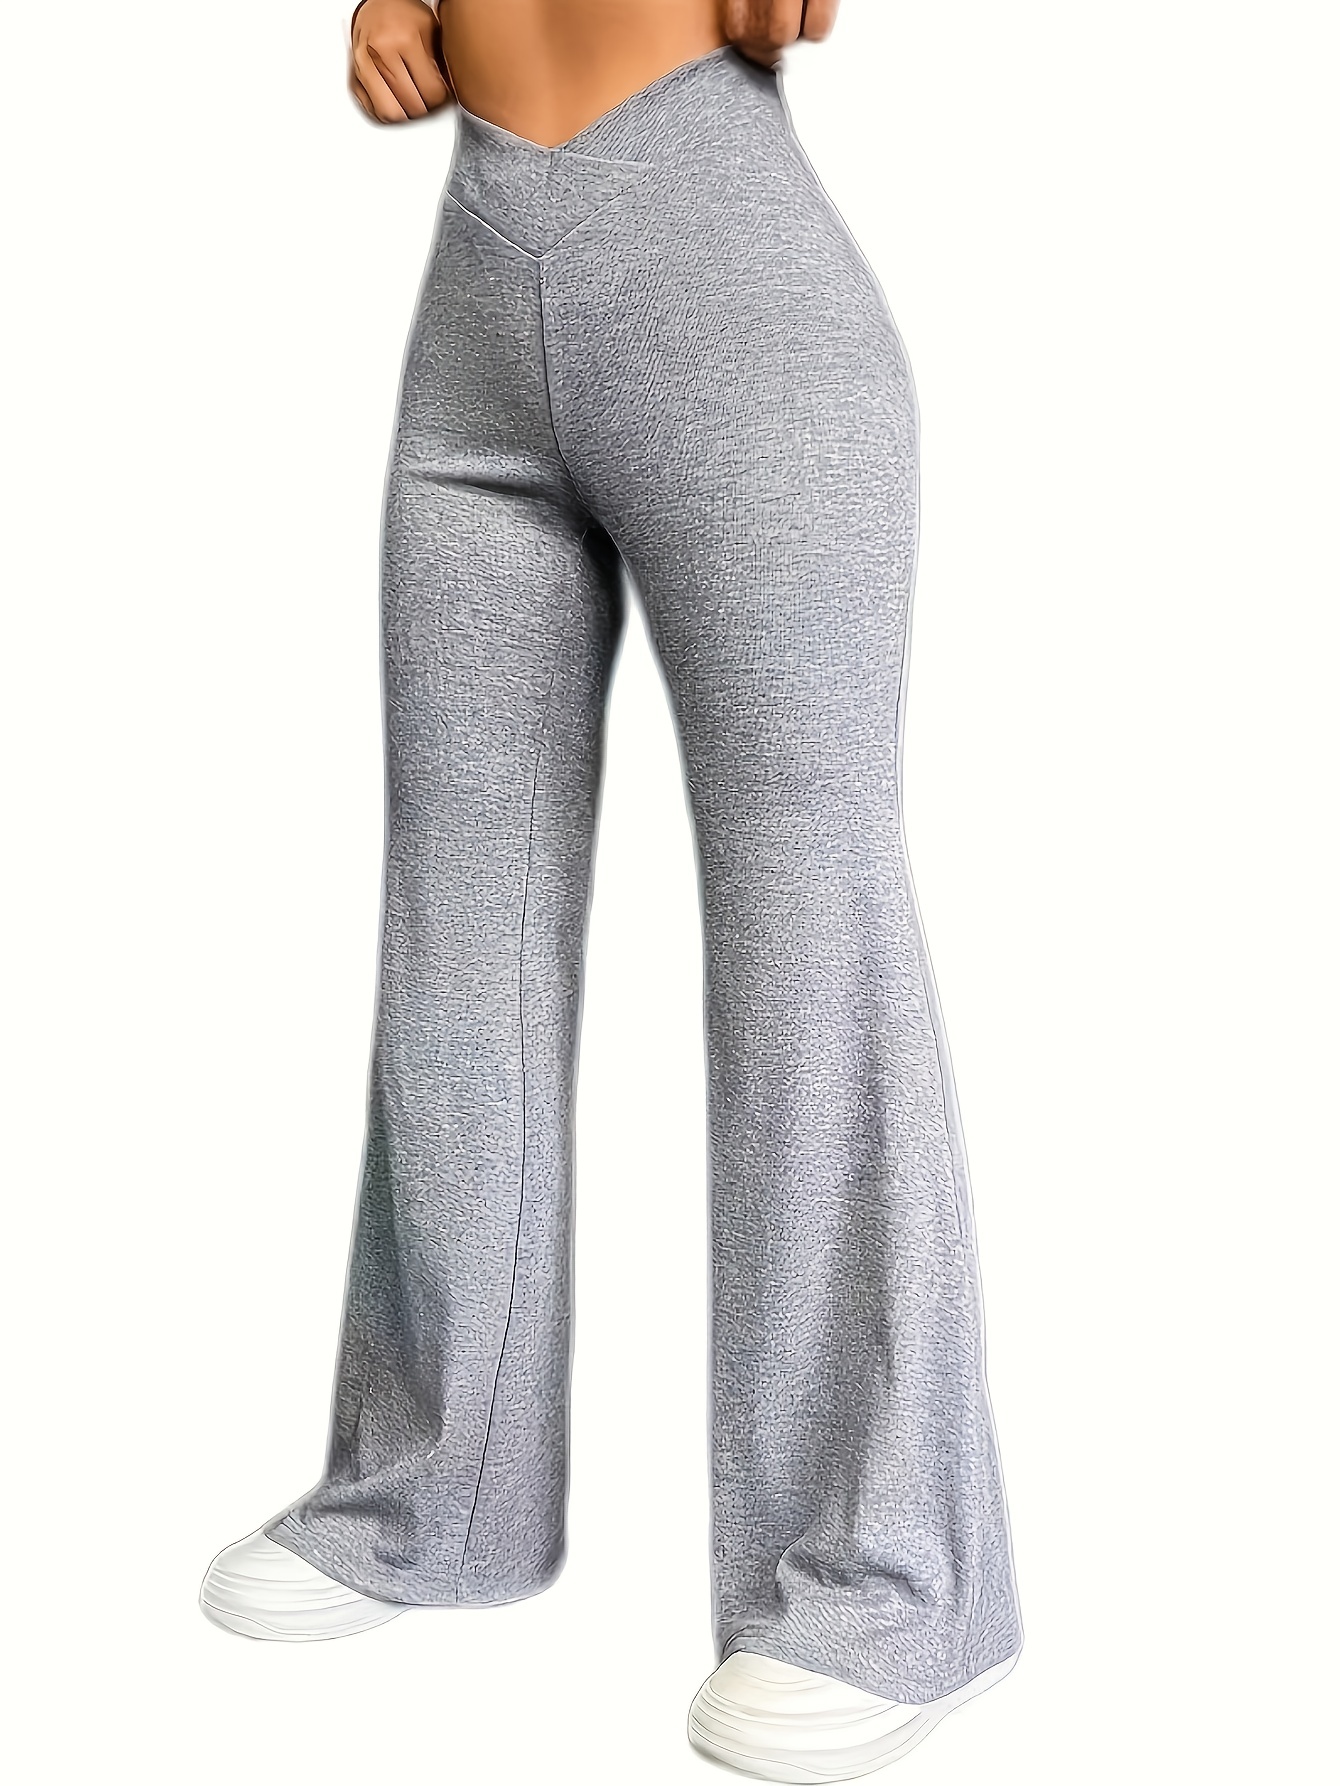  Yoga Pants Trouser High Sports Fashion Waist Wet Women Pants  Lady Pants Plus Size Yoga Pants for Women 3x-4x Grey : Ropa, Zapatos y  Joyería